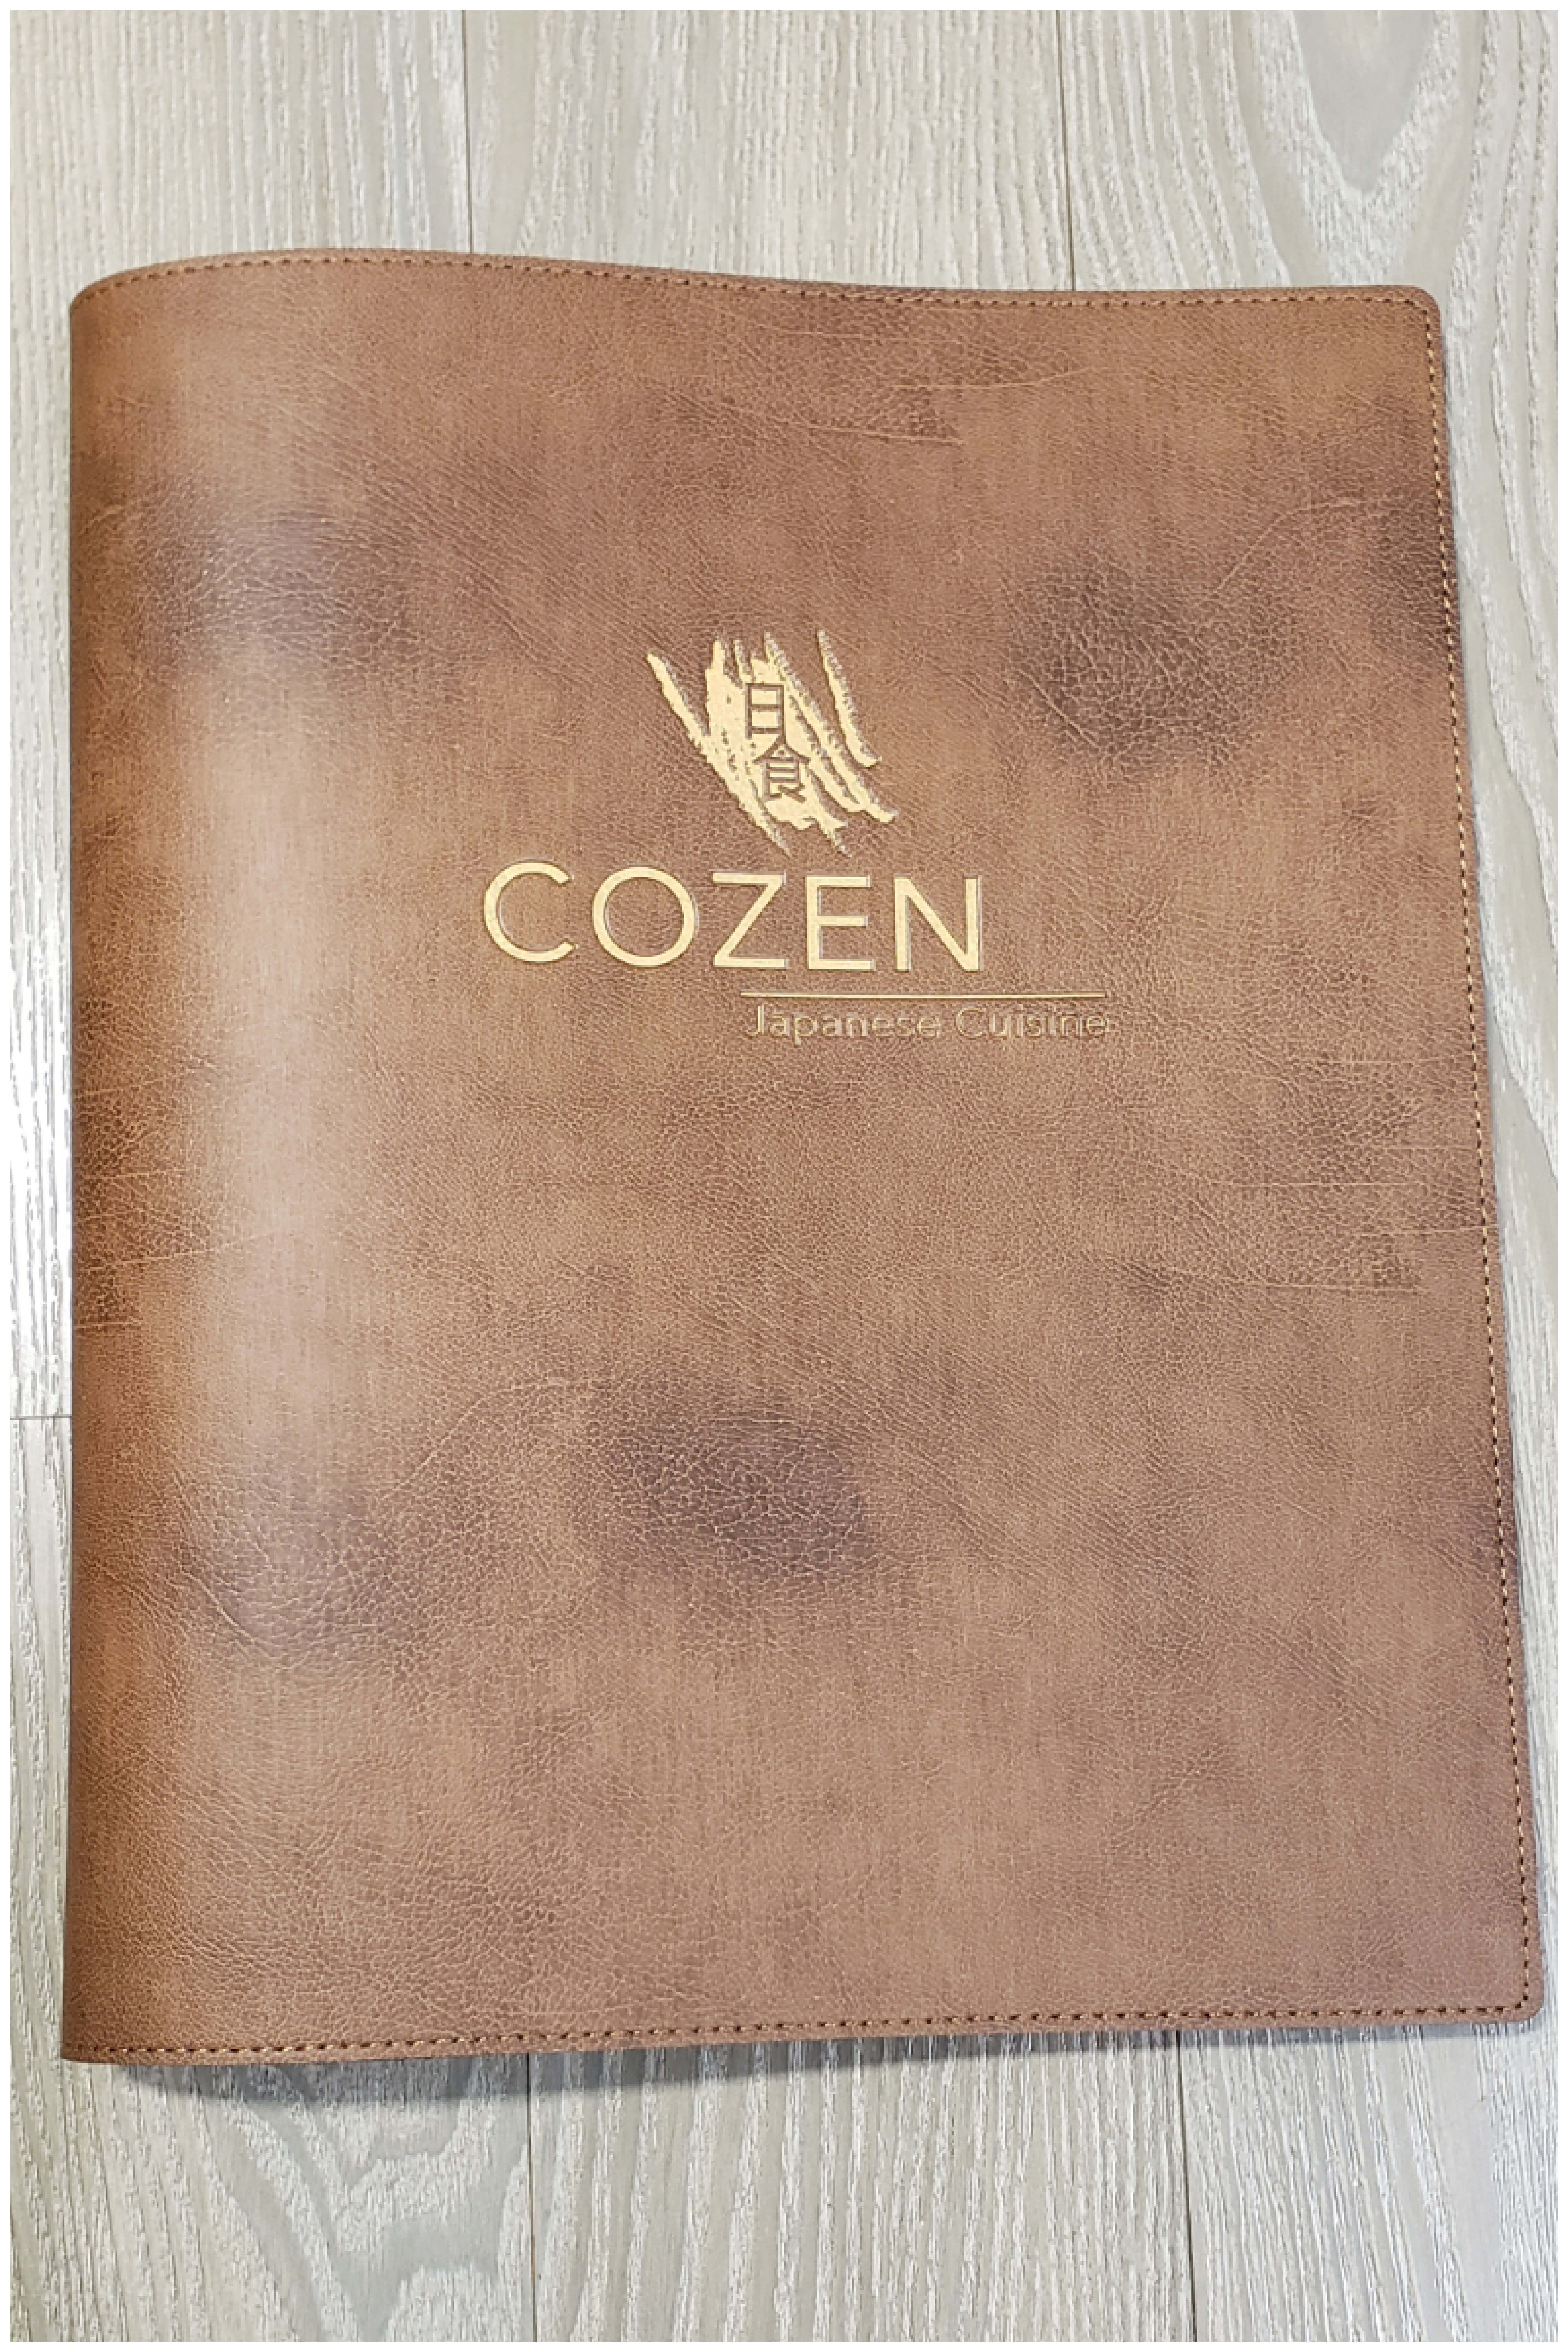 cozen-01.jpg